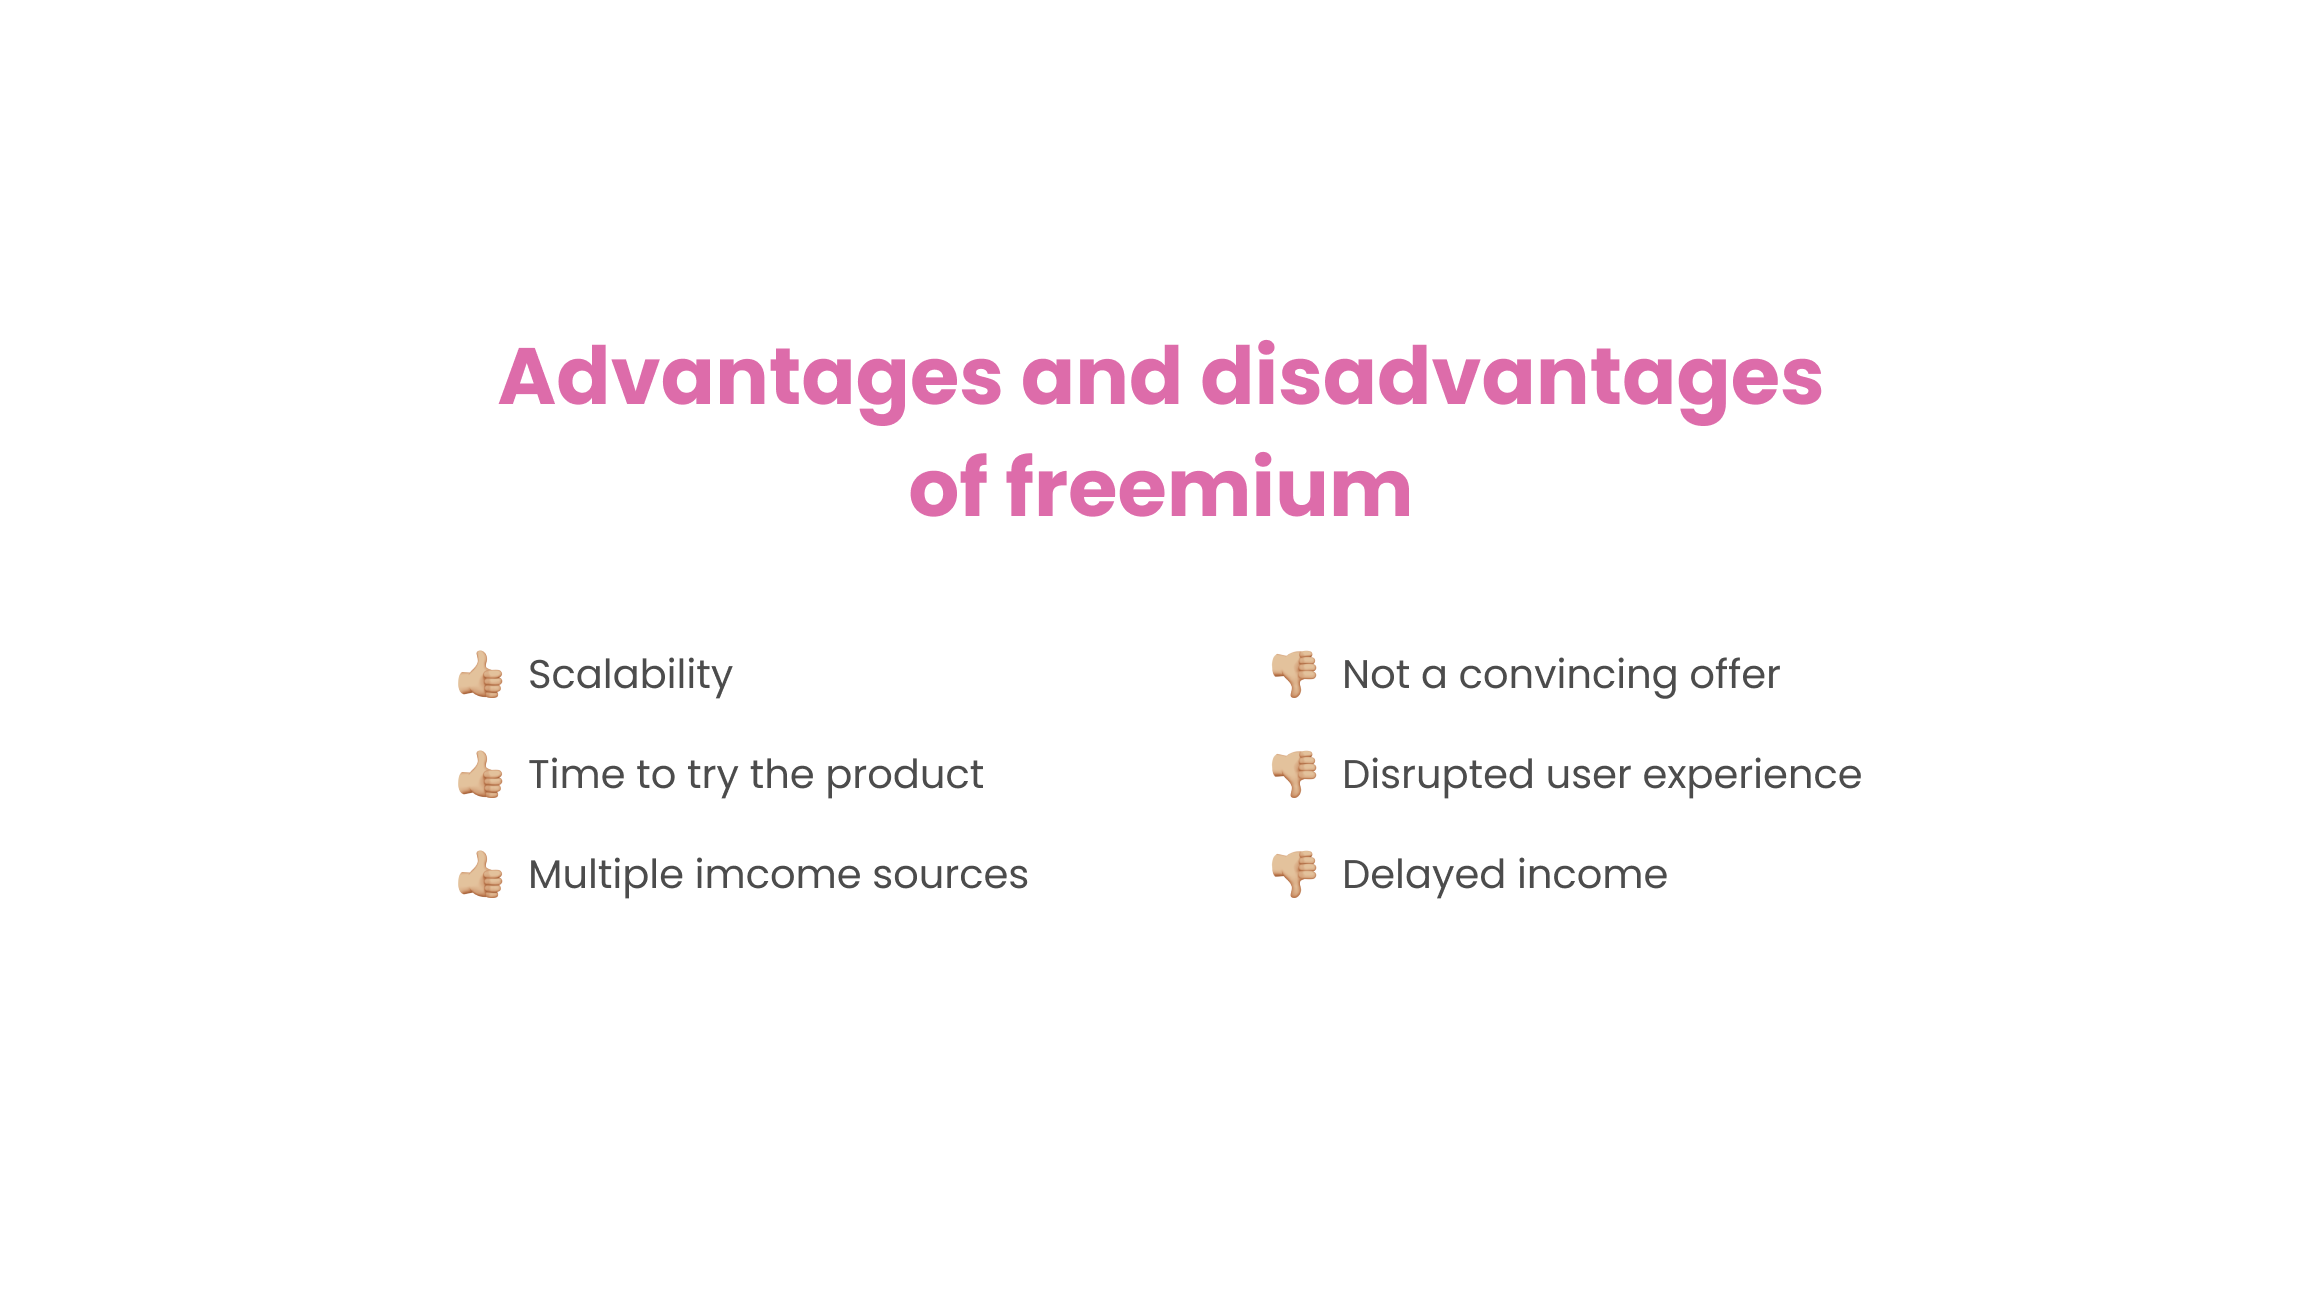 Freemium pros and cons